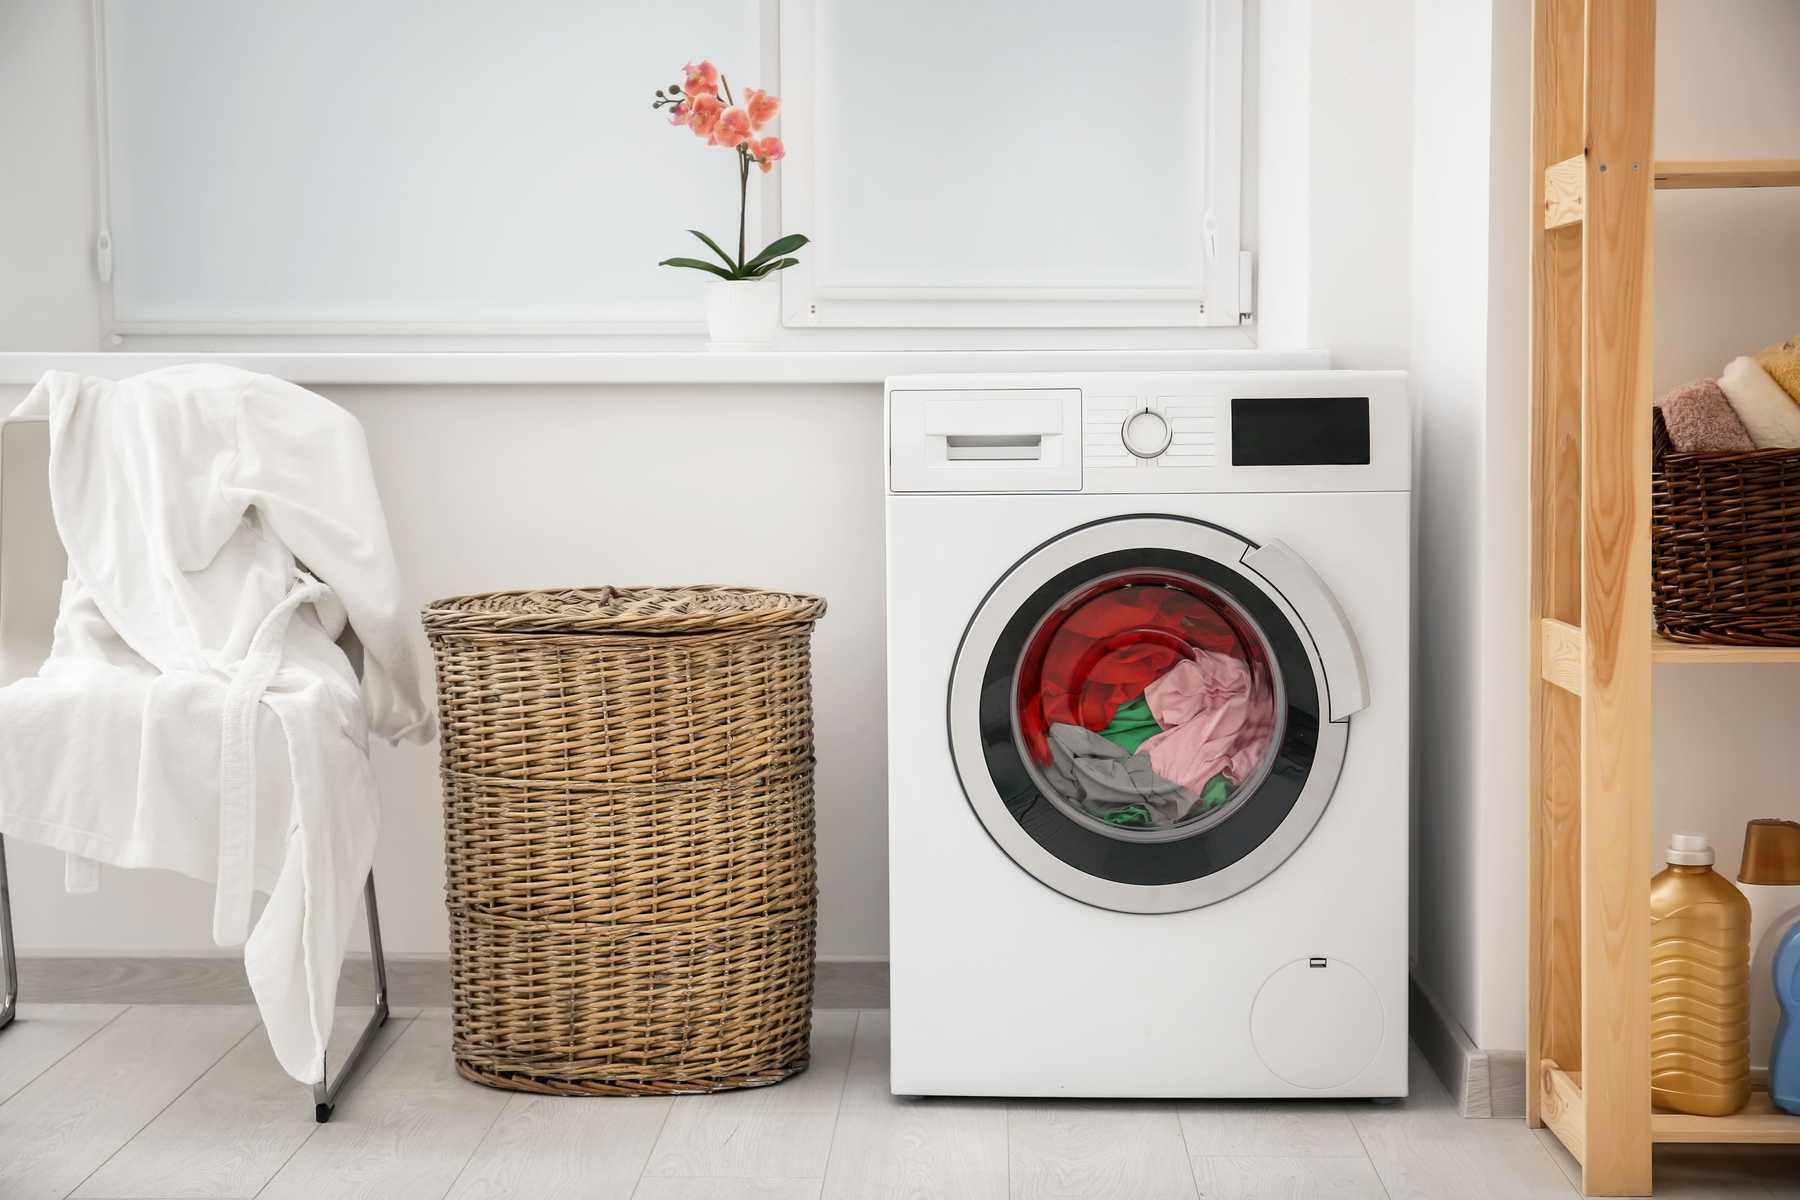 Bí quyết vàng: Cách vệ sinh lồng máy giặt tại nhà đơn giản, ai cũng làm được